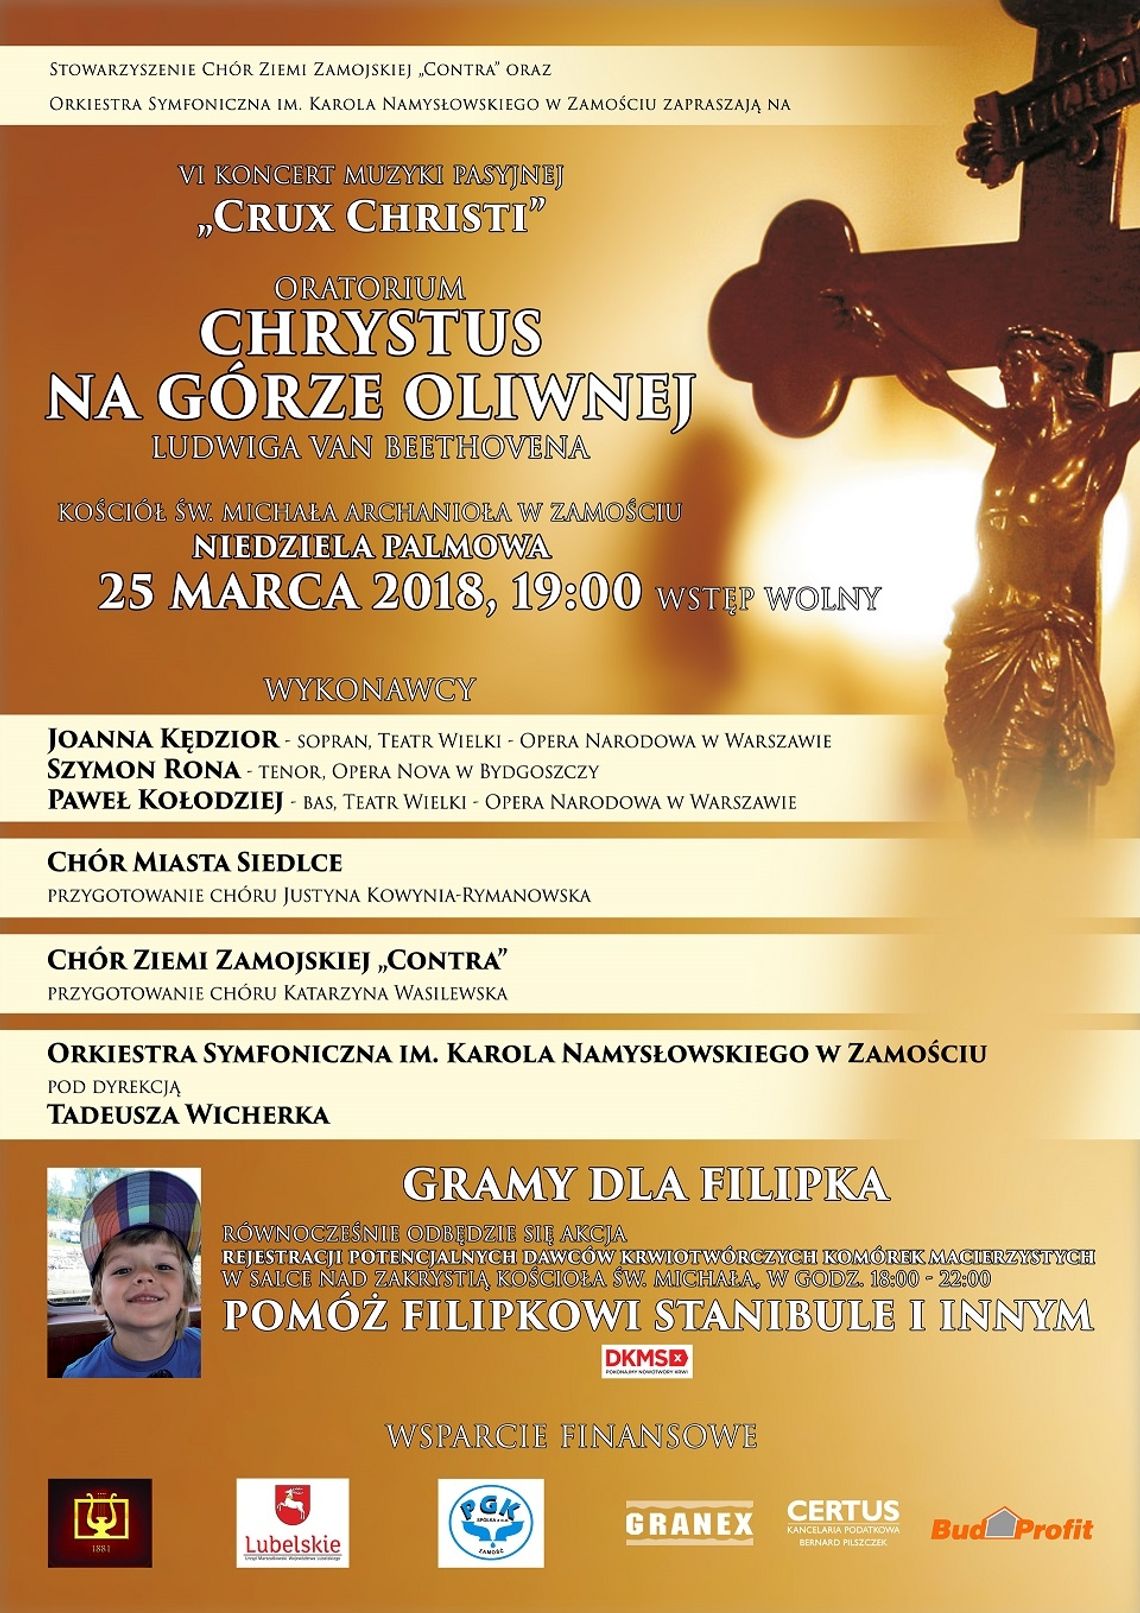 Przyjdź na VI Koncert Muzyki Pasyjnej "Crux Christi" i pomóż Filipowi Stanibule 